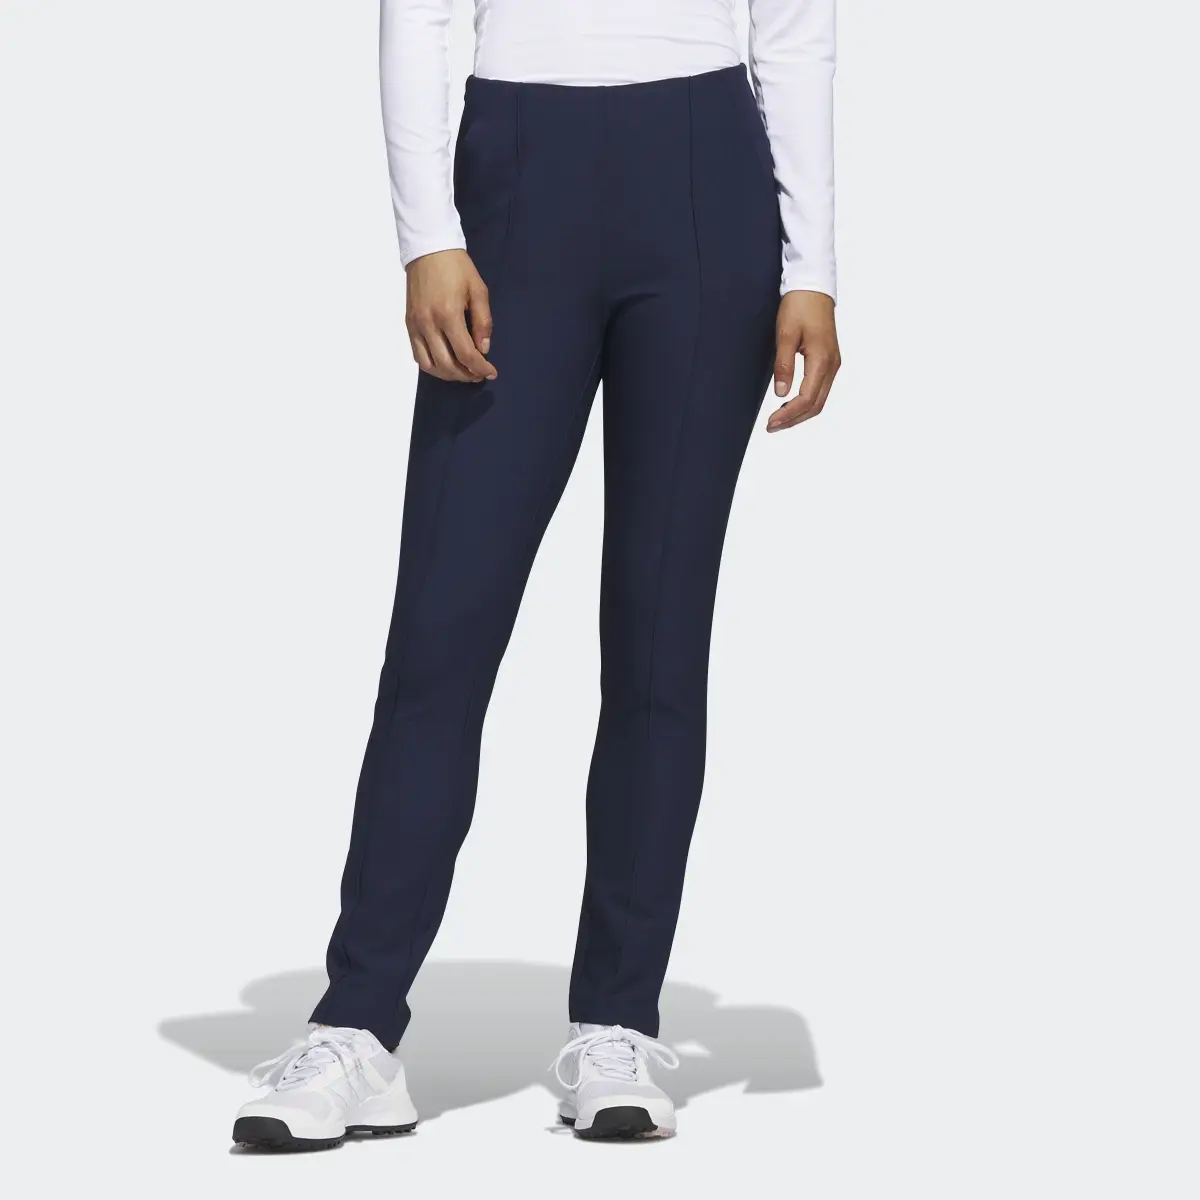 Adidas Pintuck Pull-On Pants. 1